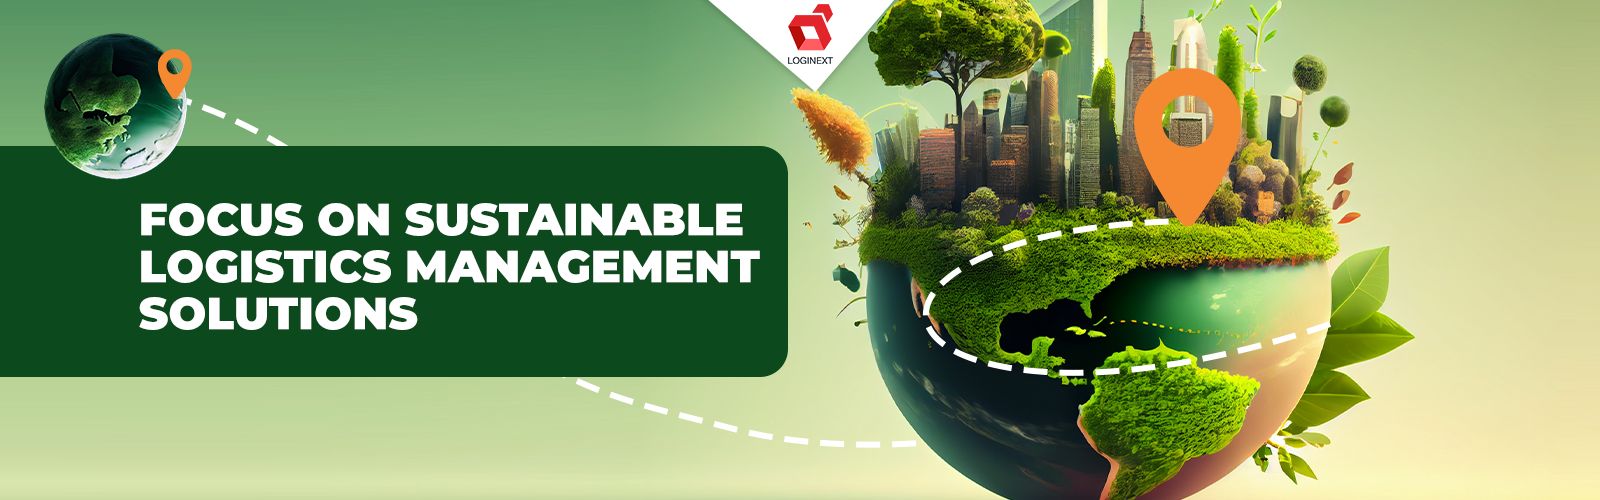 Soluciones de gestión logística sostenible